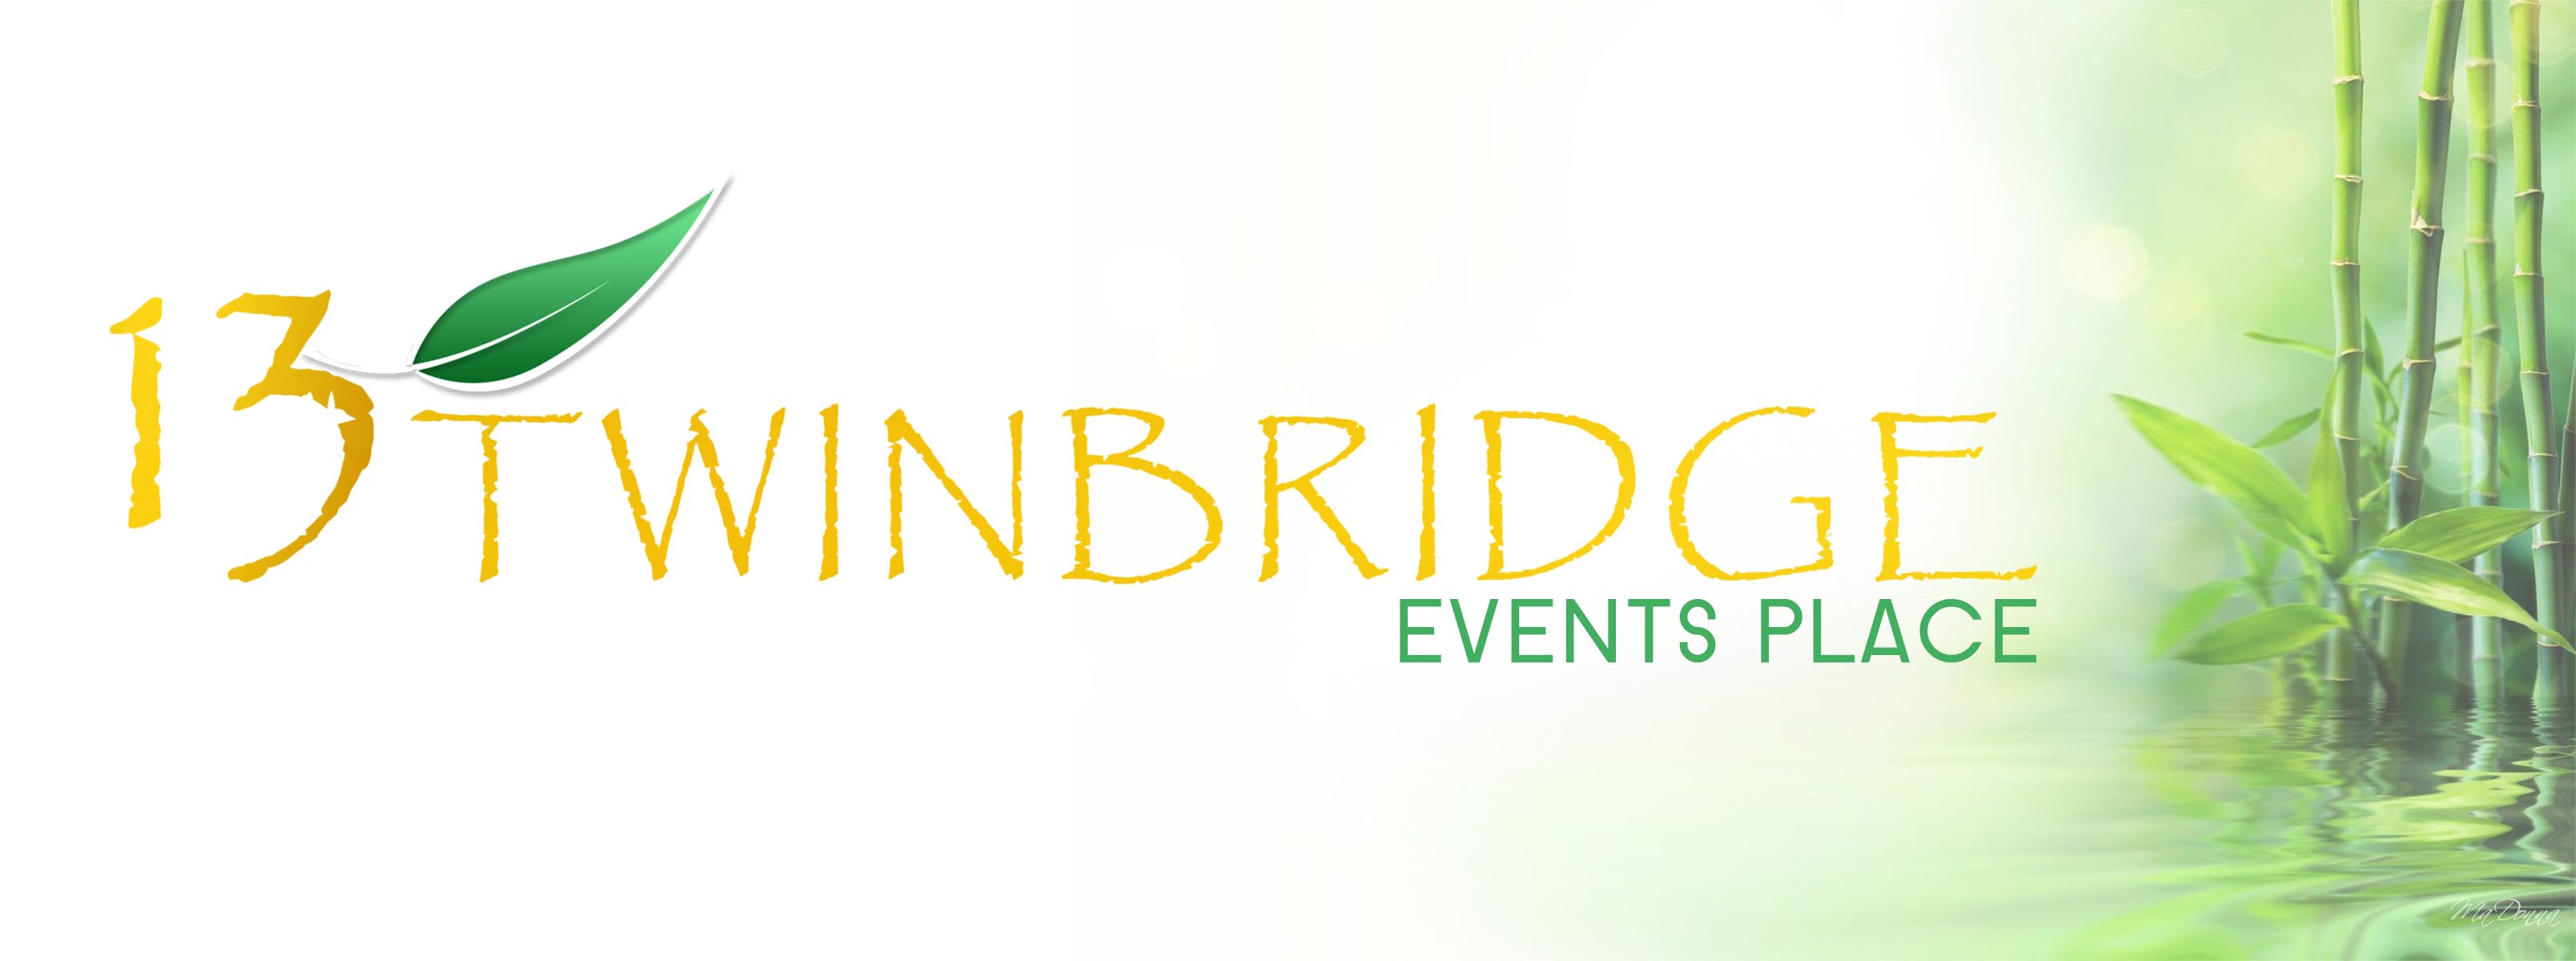 13 Twinbridge Events Place